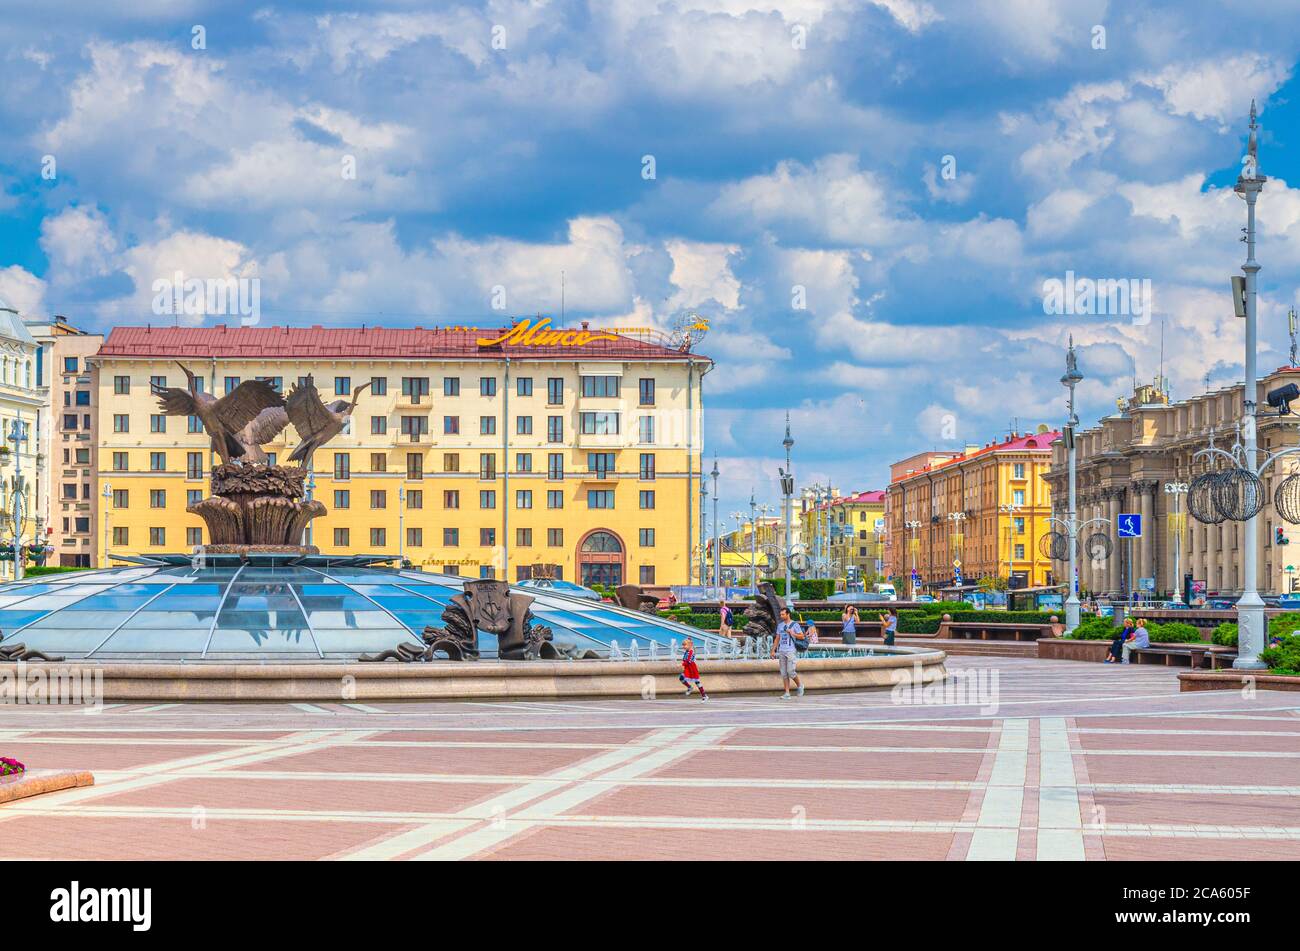 Minsk, Bielorussia, 26 luglio 2020: Piazza dell'indipendenza e viale con il classicismo socialista edifici in stile impero Stalin, Hotel Minsk e persone a piedi, cielo blu nuvole bianche in sole giorno d'estate Foto Stock